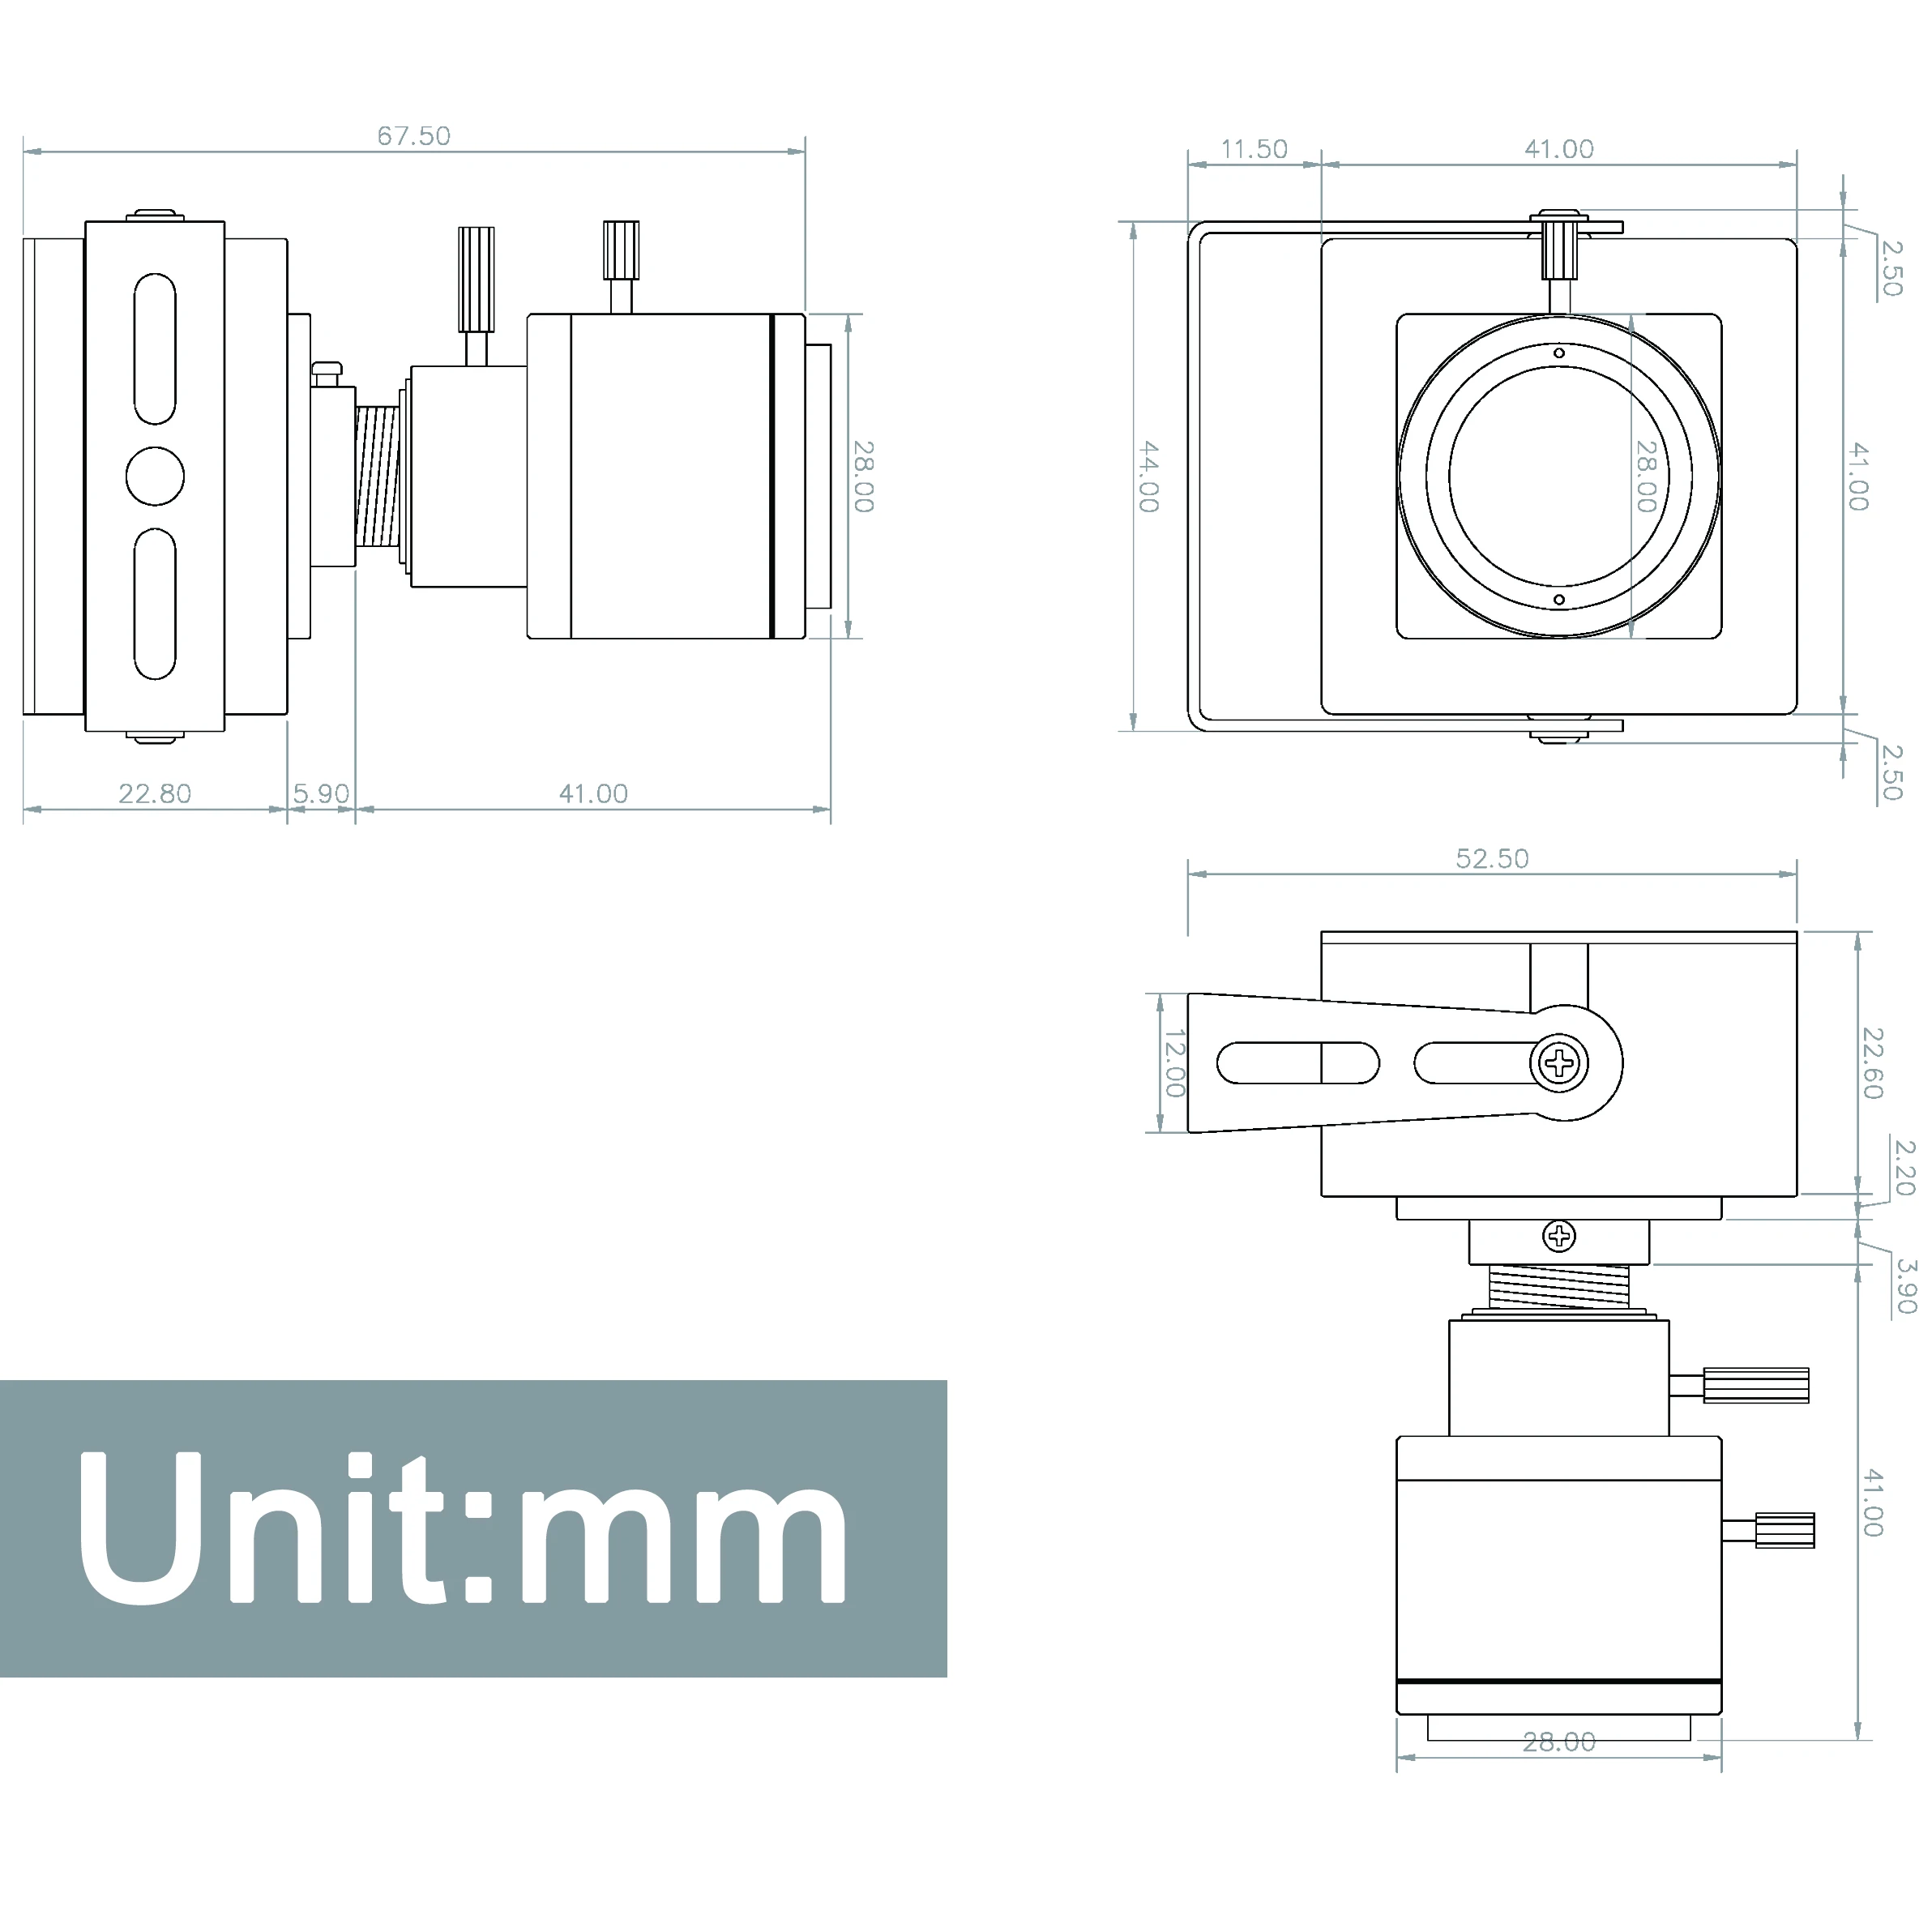 Уеб камера за 4K IMX415 MJPEG 30 кадъра в секунда с ръчно увеличение, варифокальный обектив от 2.8-12 мм, USB-камера за преносими КОМПЮТРИ.